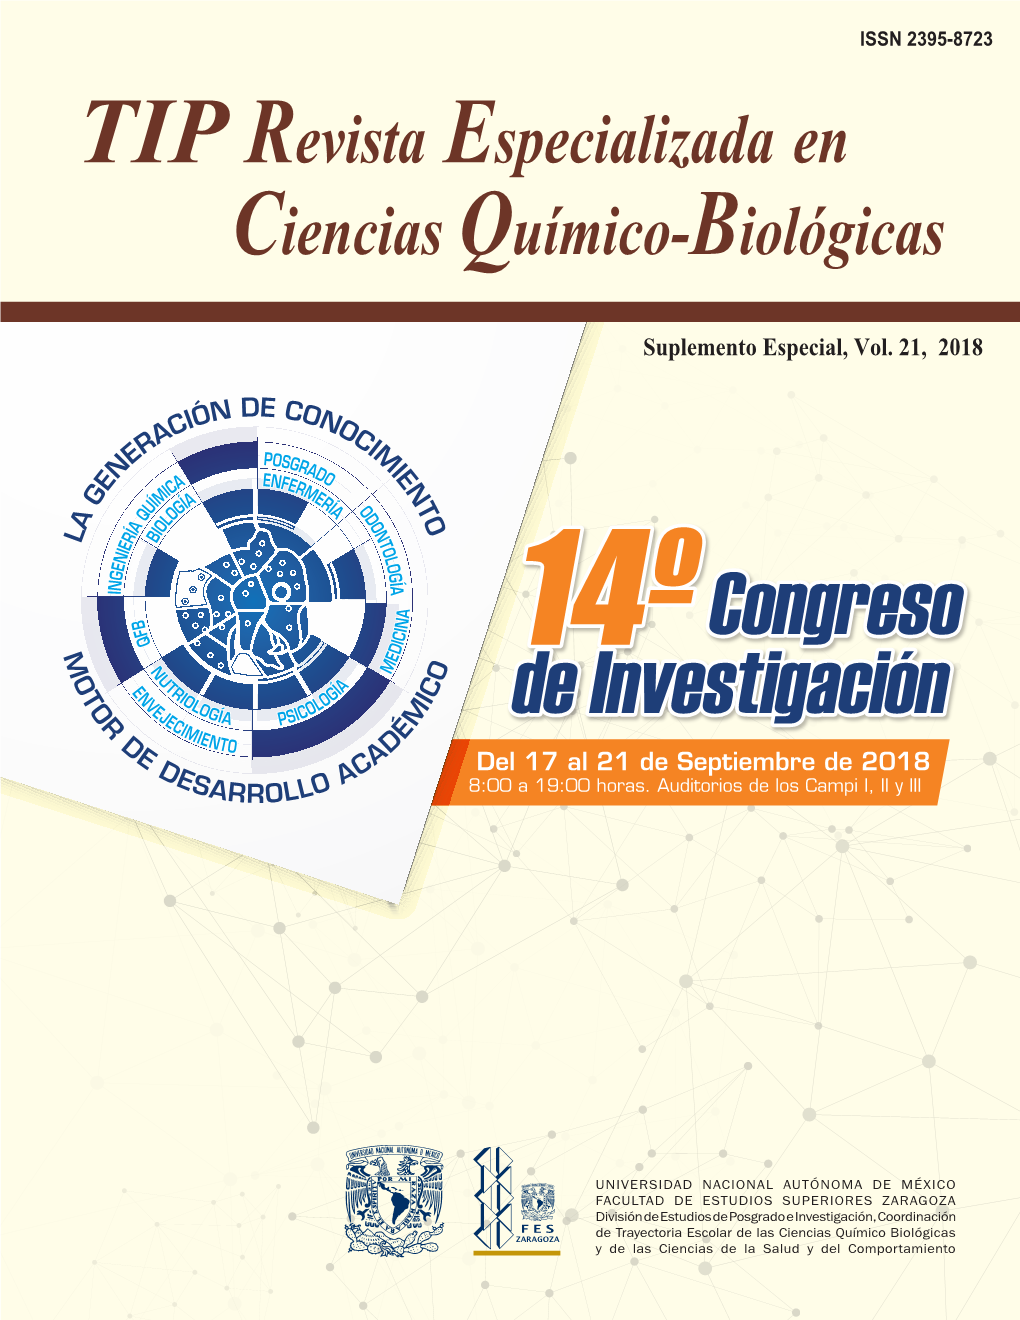 TIP Revista Especializada En Ciencias Químico-Biológicas